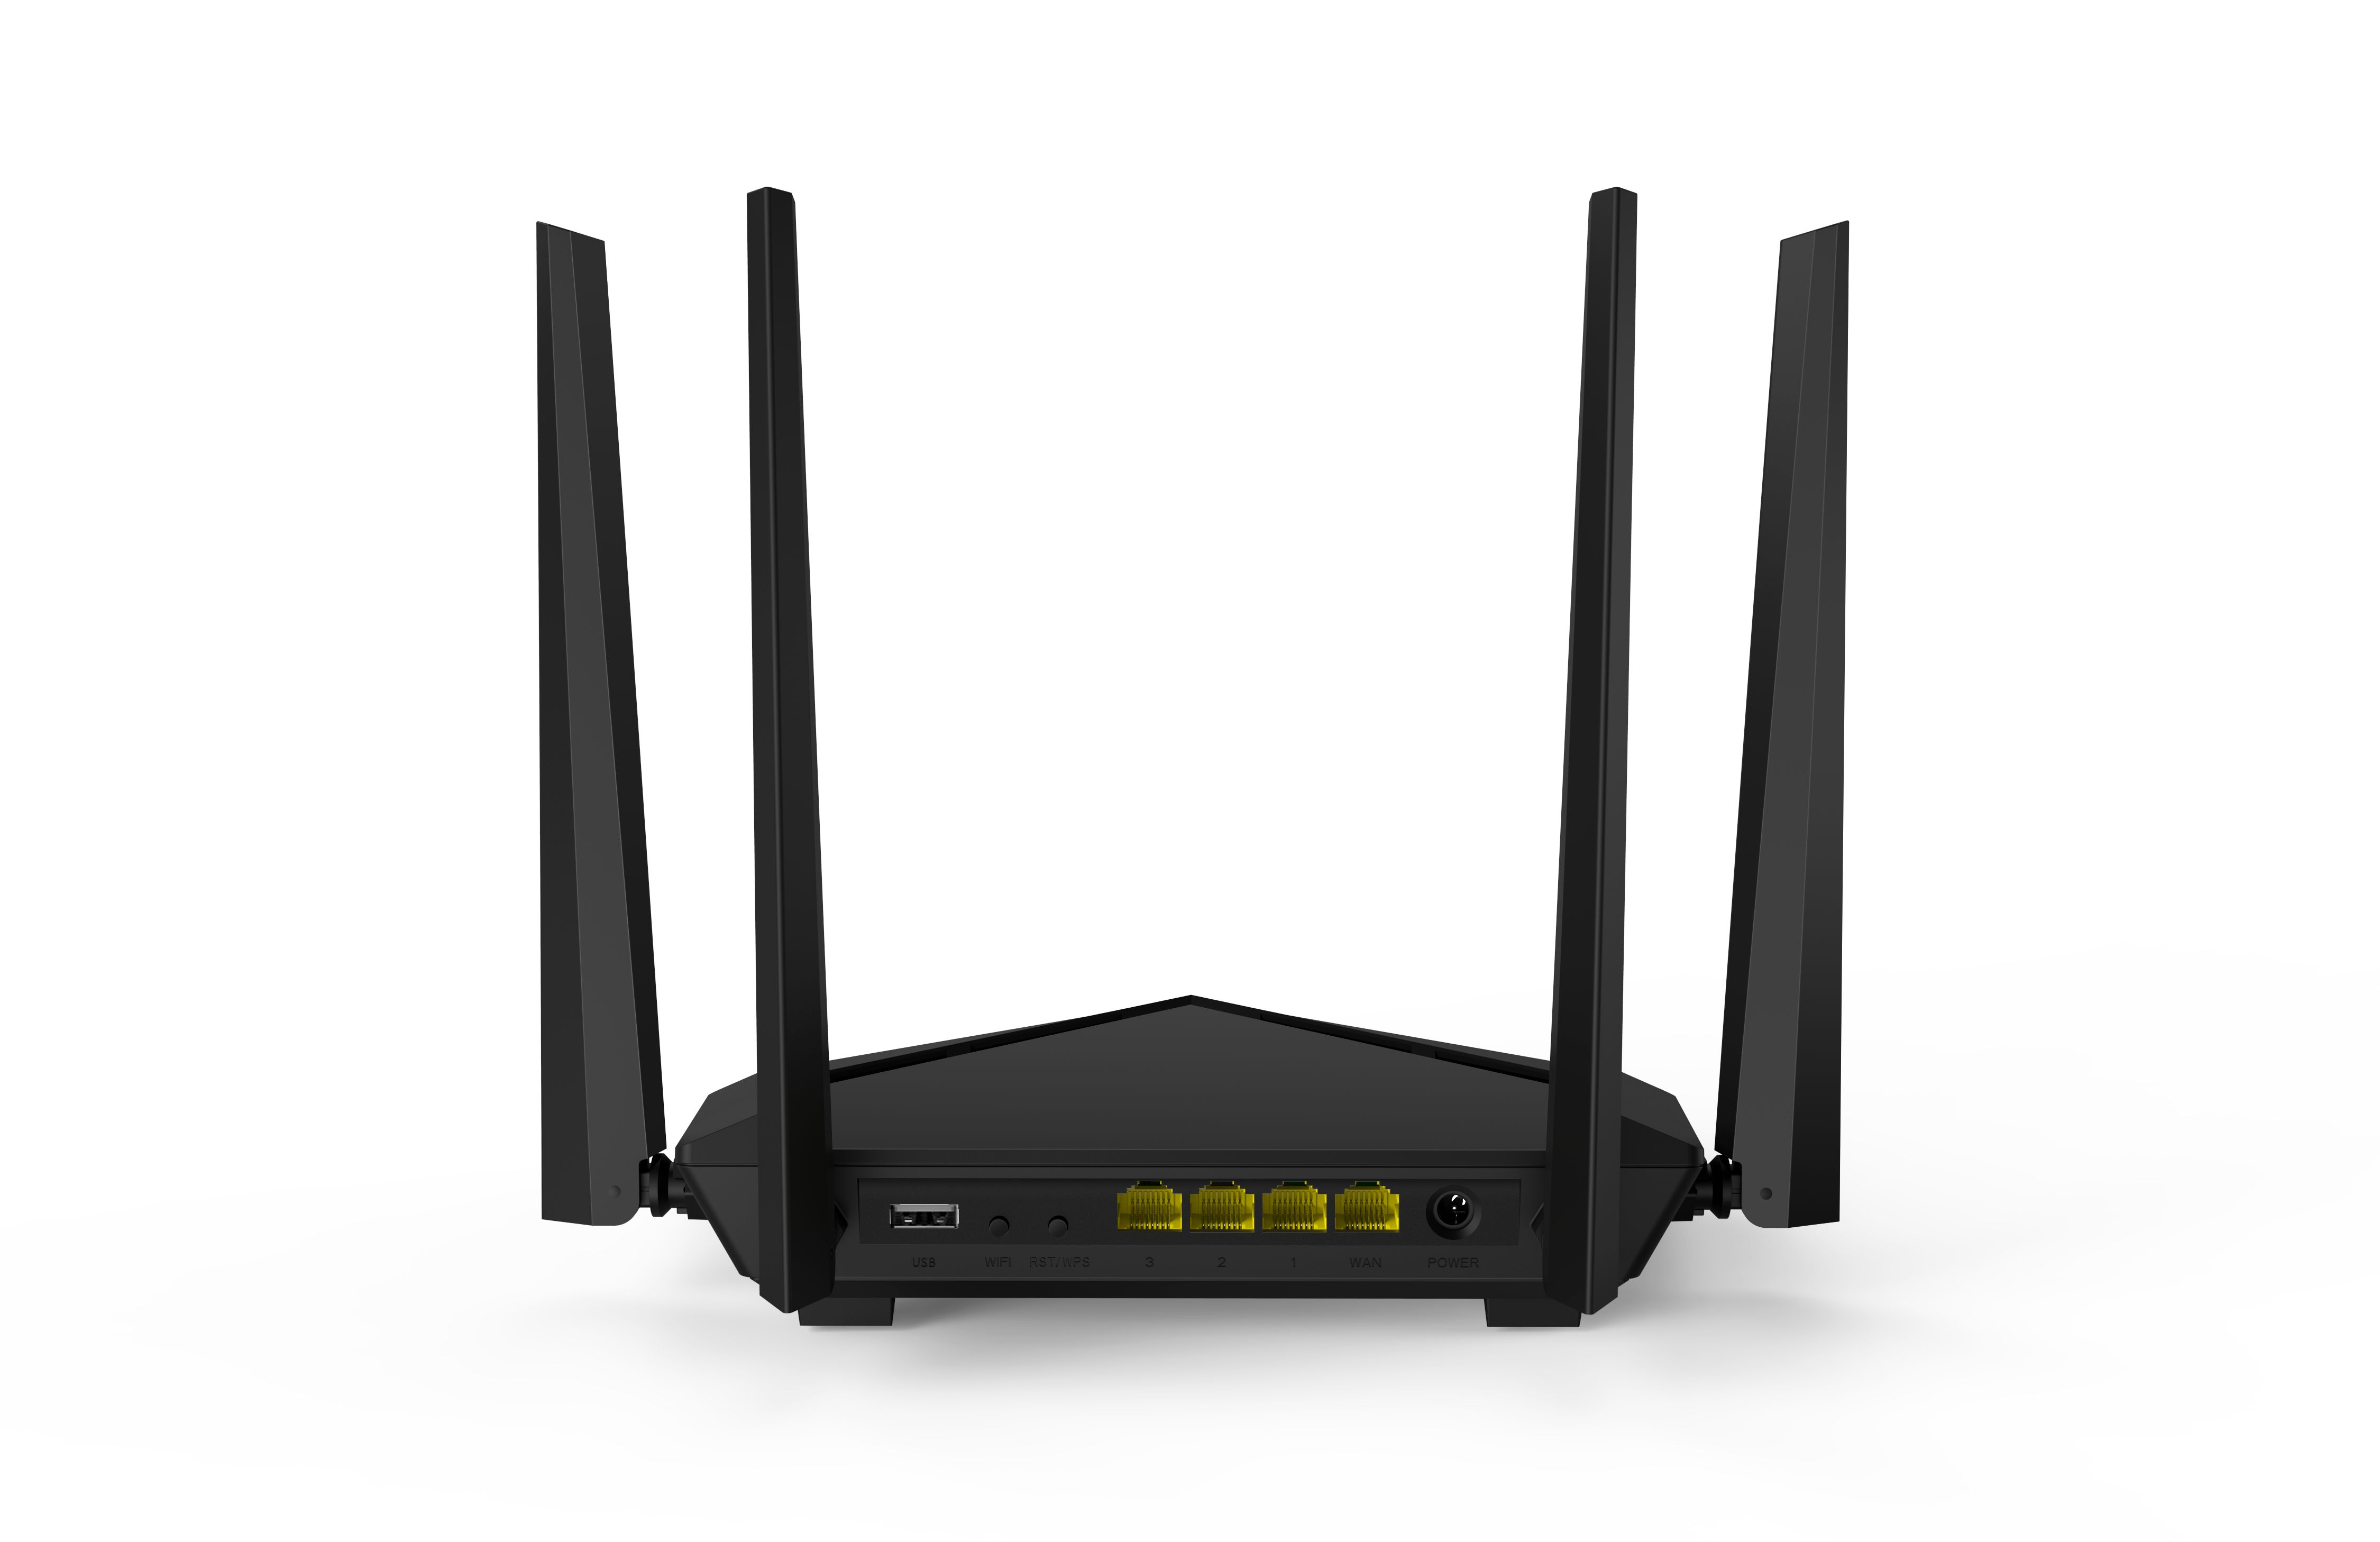 Bộ phát wifi không dây tốc độ 1200 Mbps 4 râu băng tần kép Wireless Router AC10U Tenda hàng chính hãng